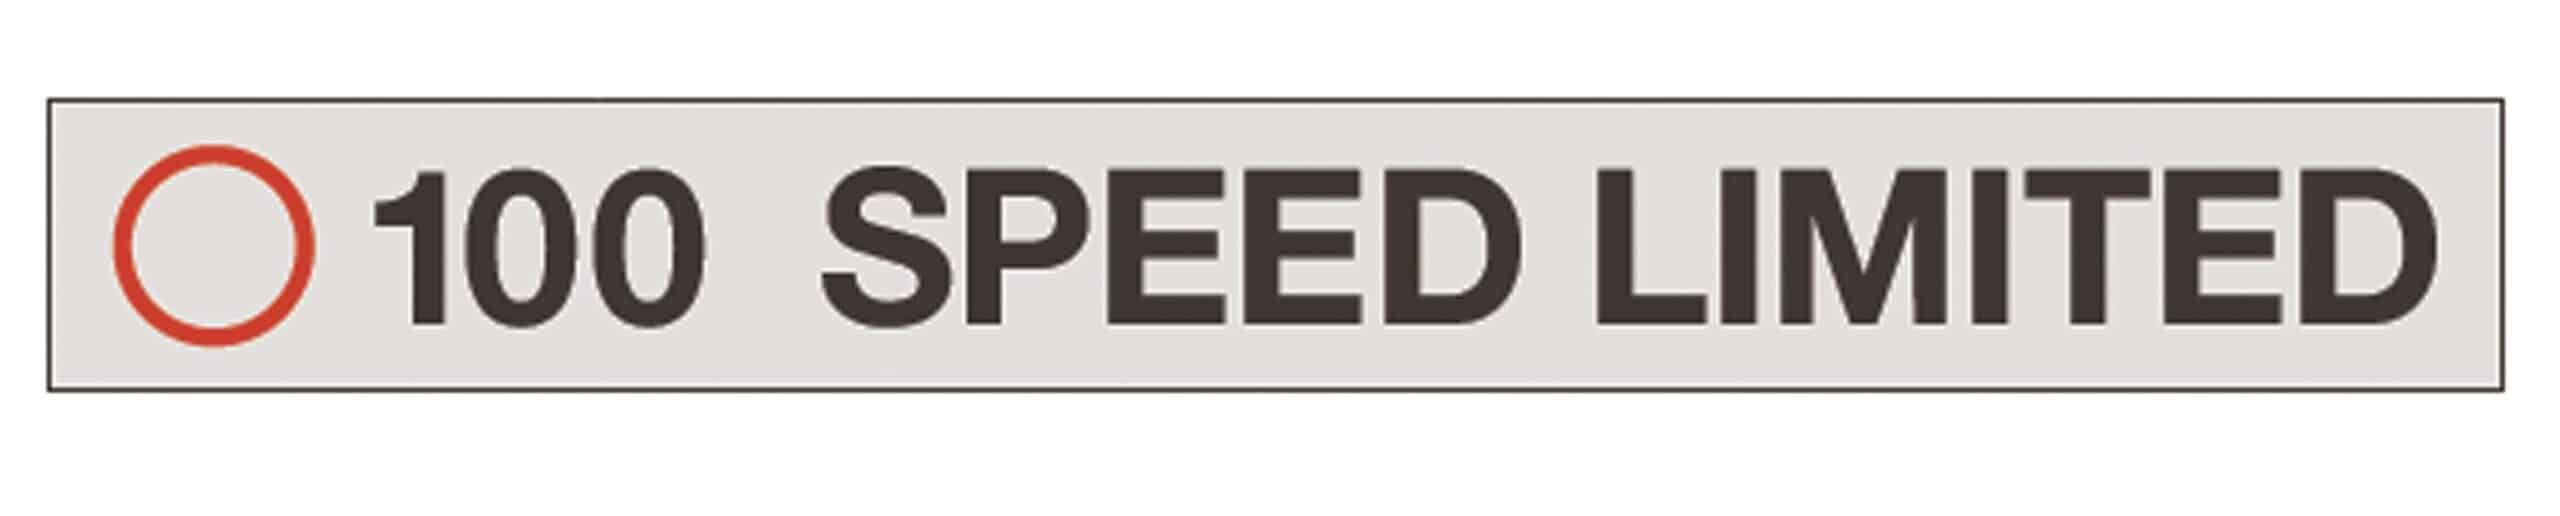 SLI 100 Speed Limited